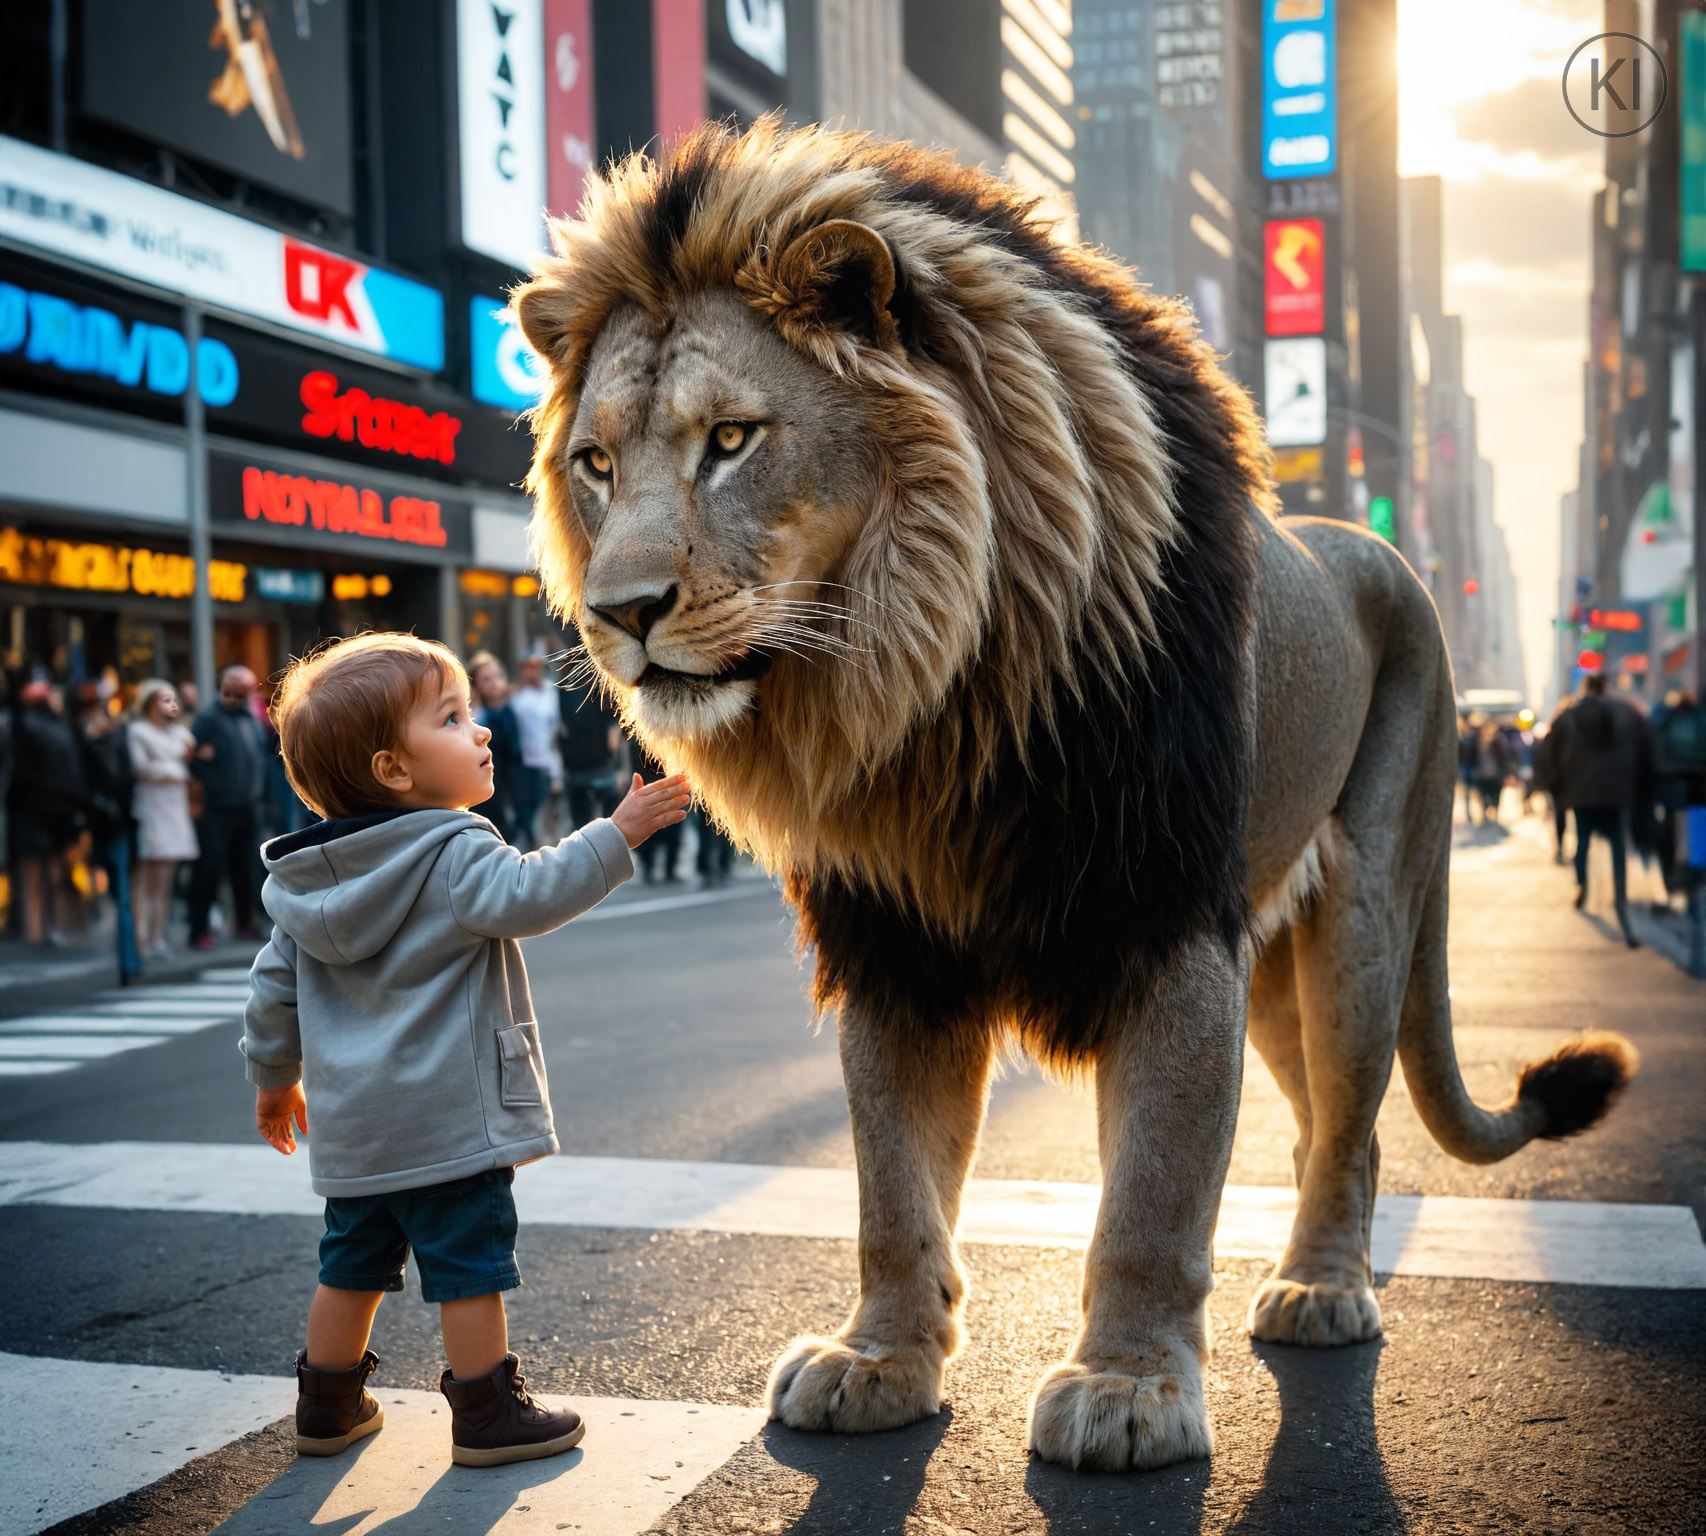 Lion on Time Square | KI-Bildgenerierung, Campaign